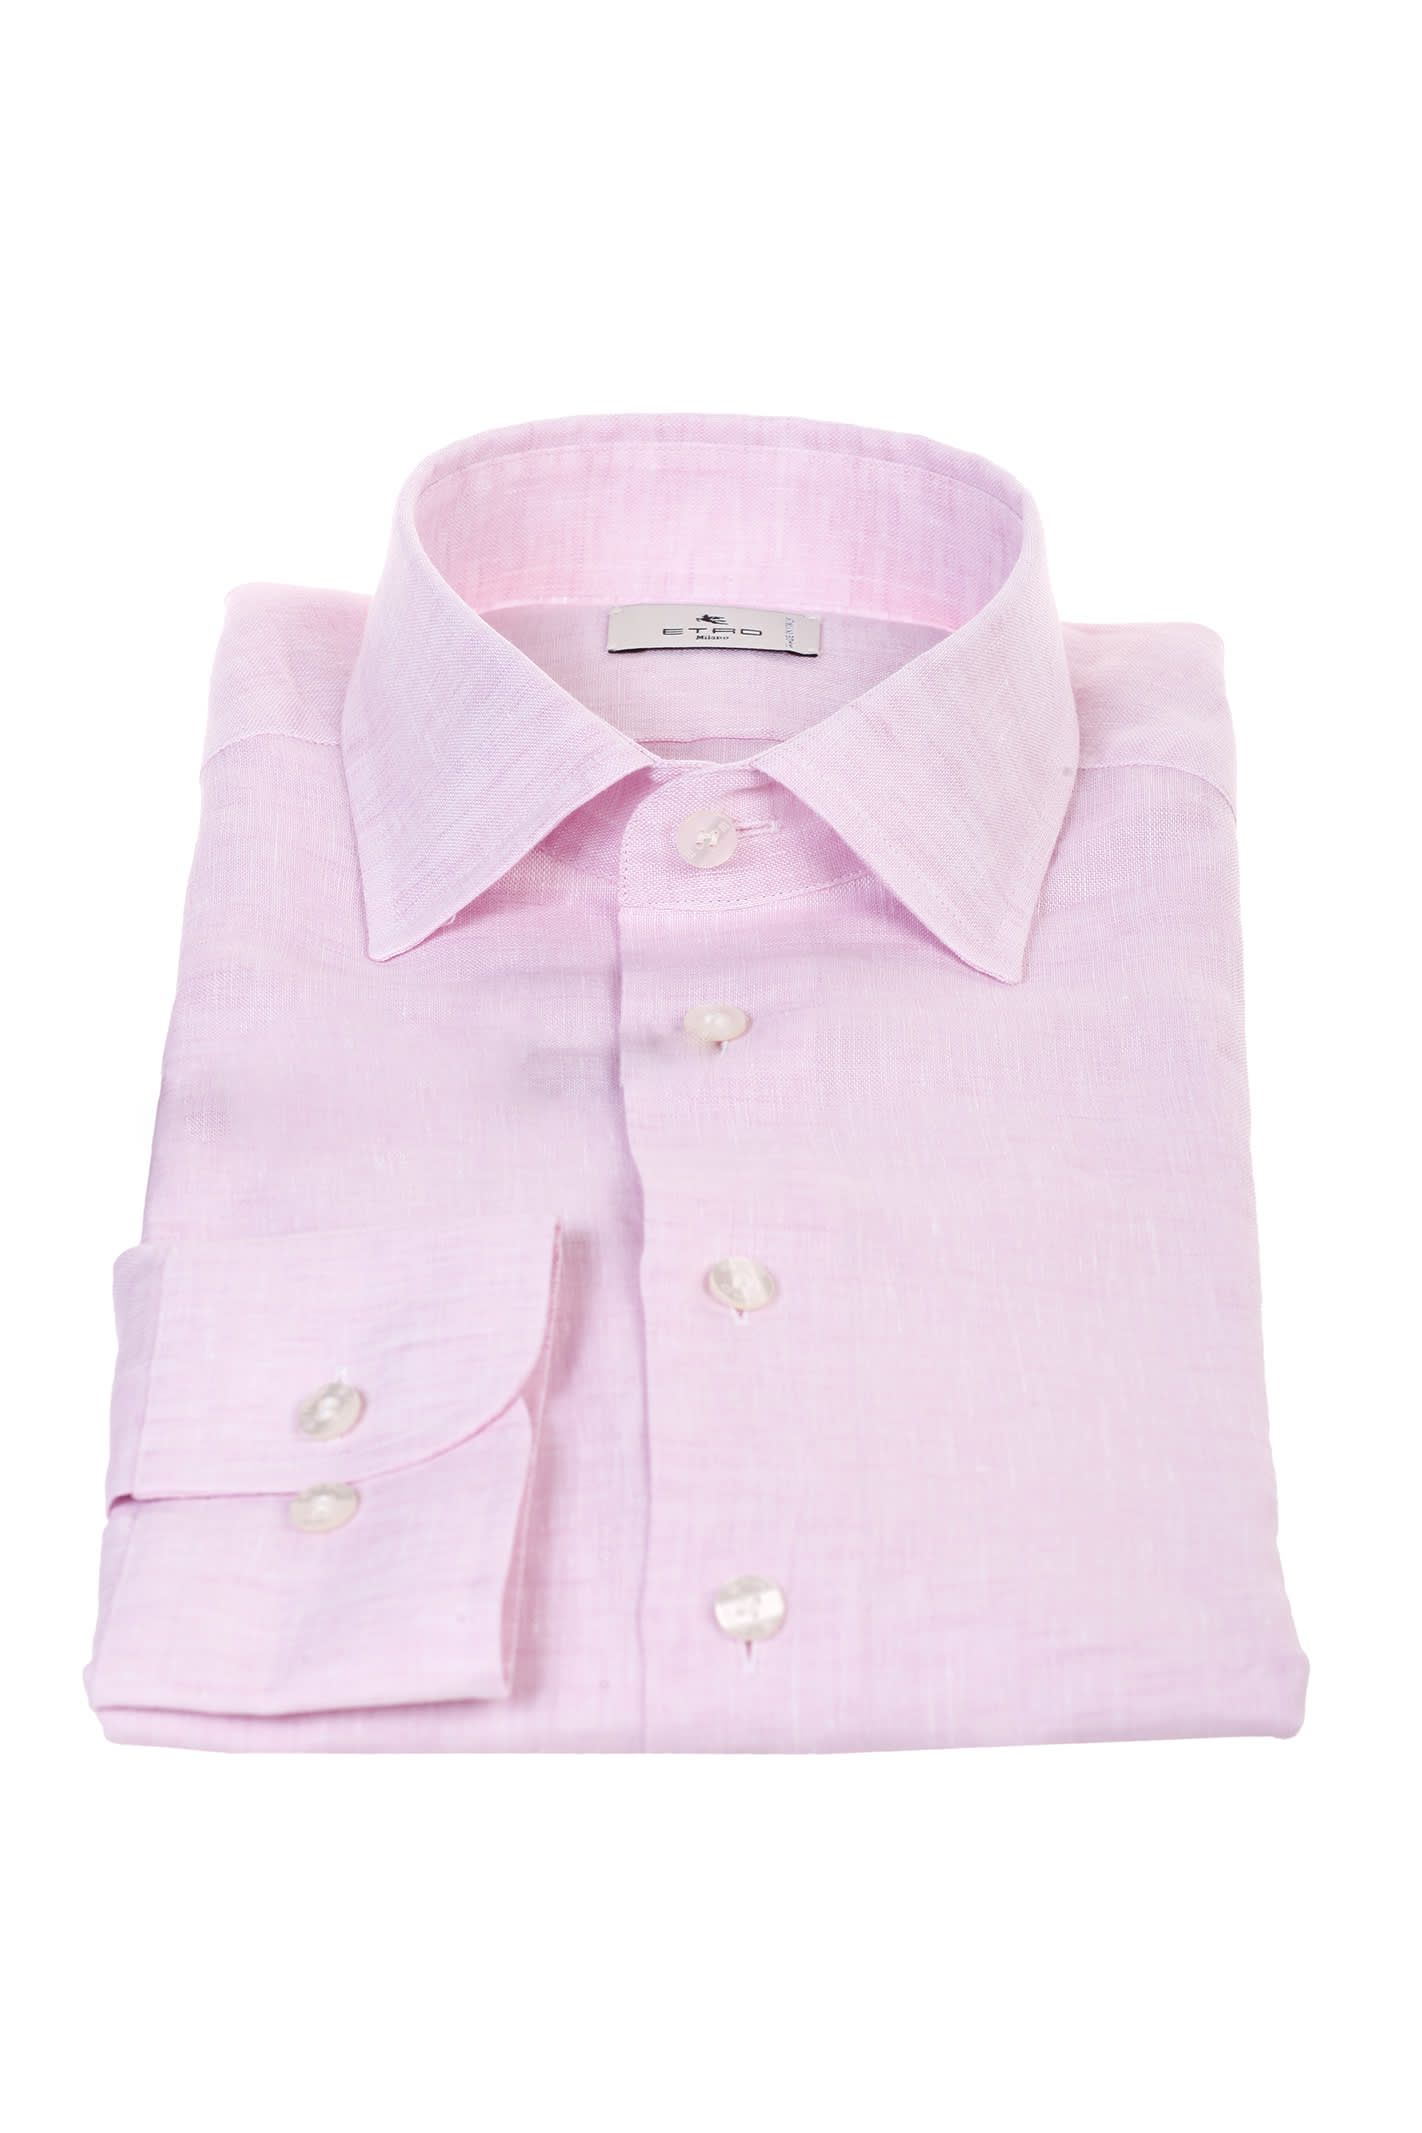 Etro pink linen shirt